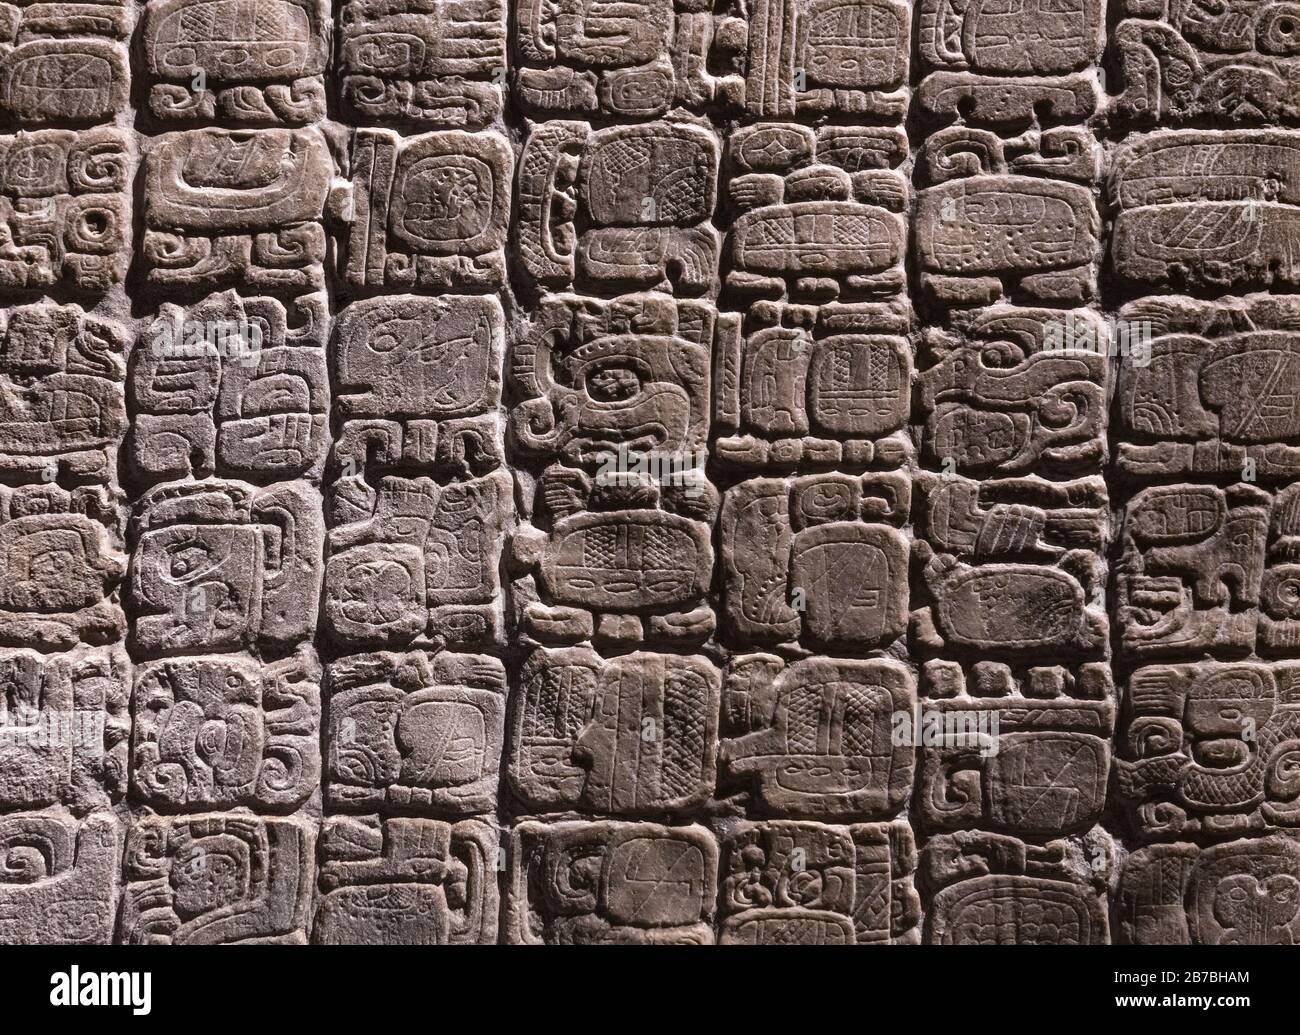 Alfabeto maya. Sistema de escritura jeroglífica encontrado en Copán (Honduras), Tikal (Guatemala) y Chichén Itzá, Palenque, Uxmal, (México). Foto de stock